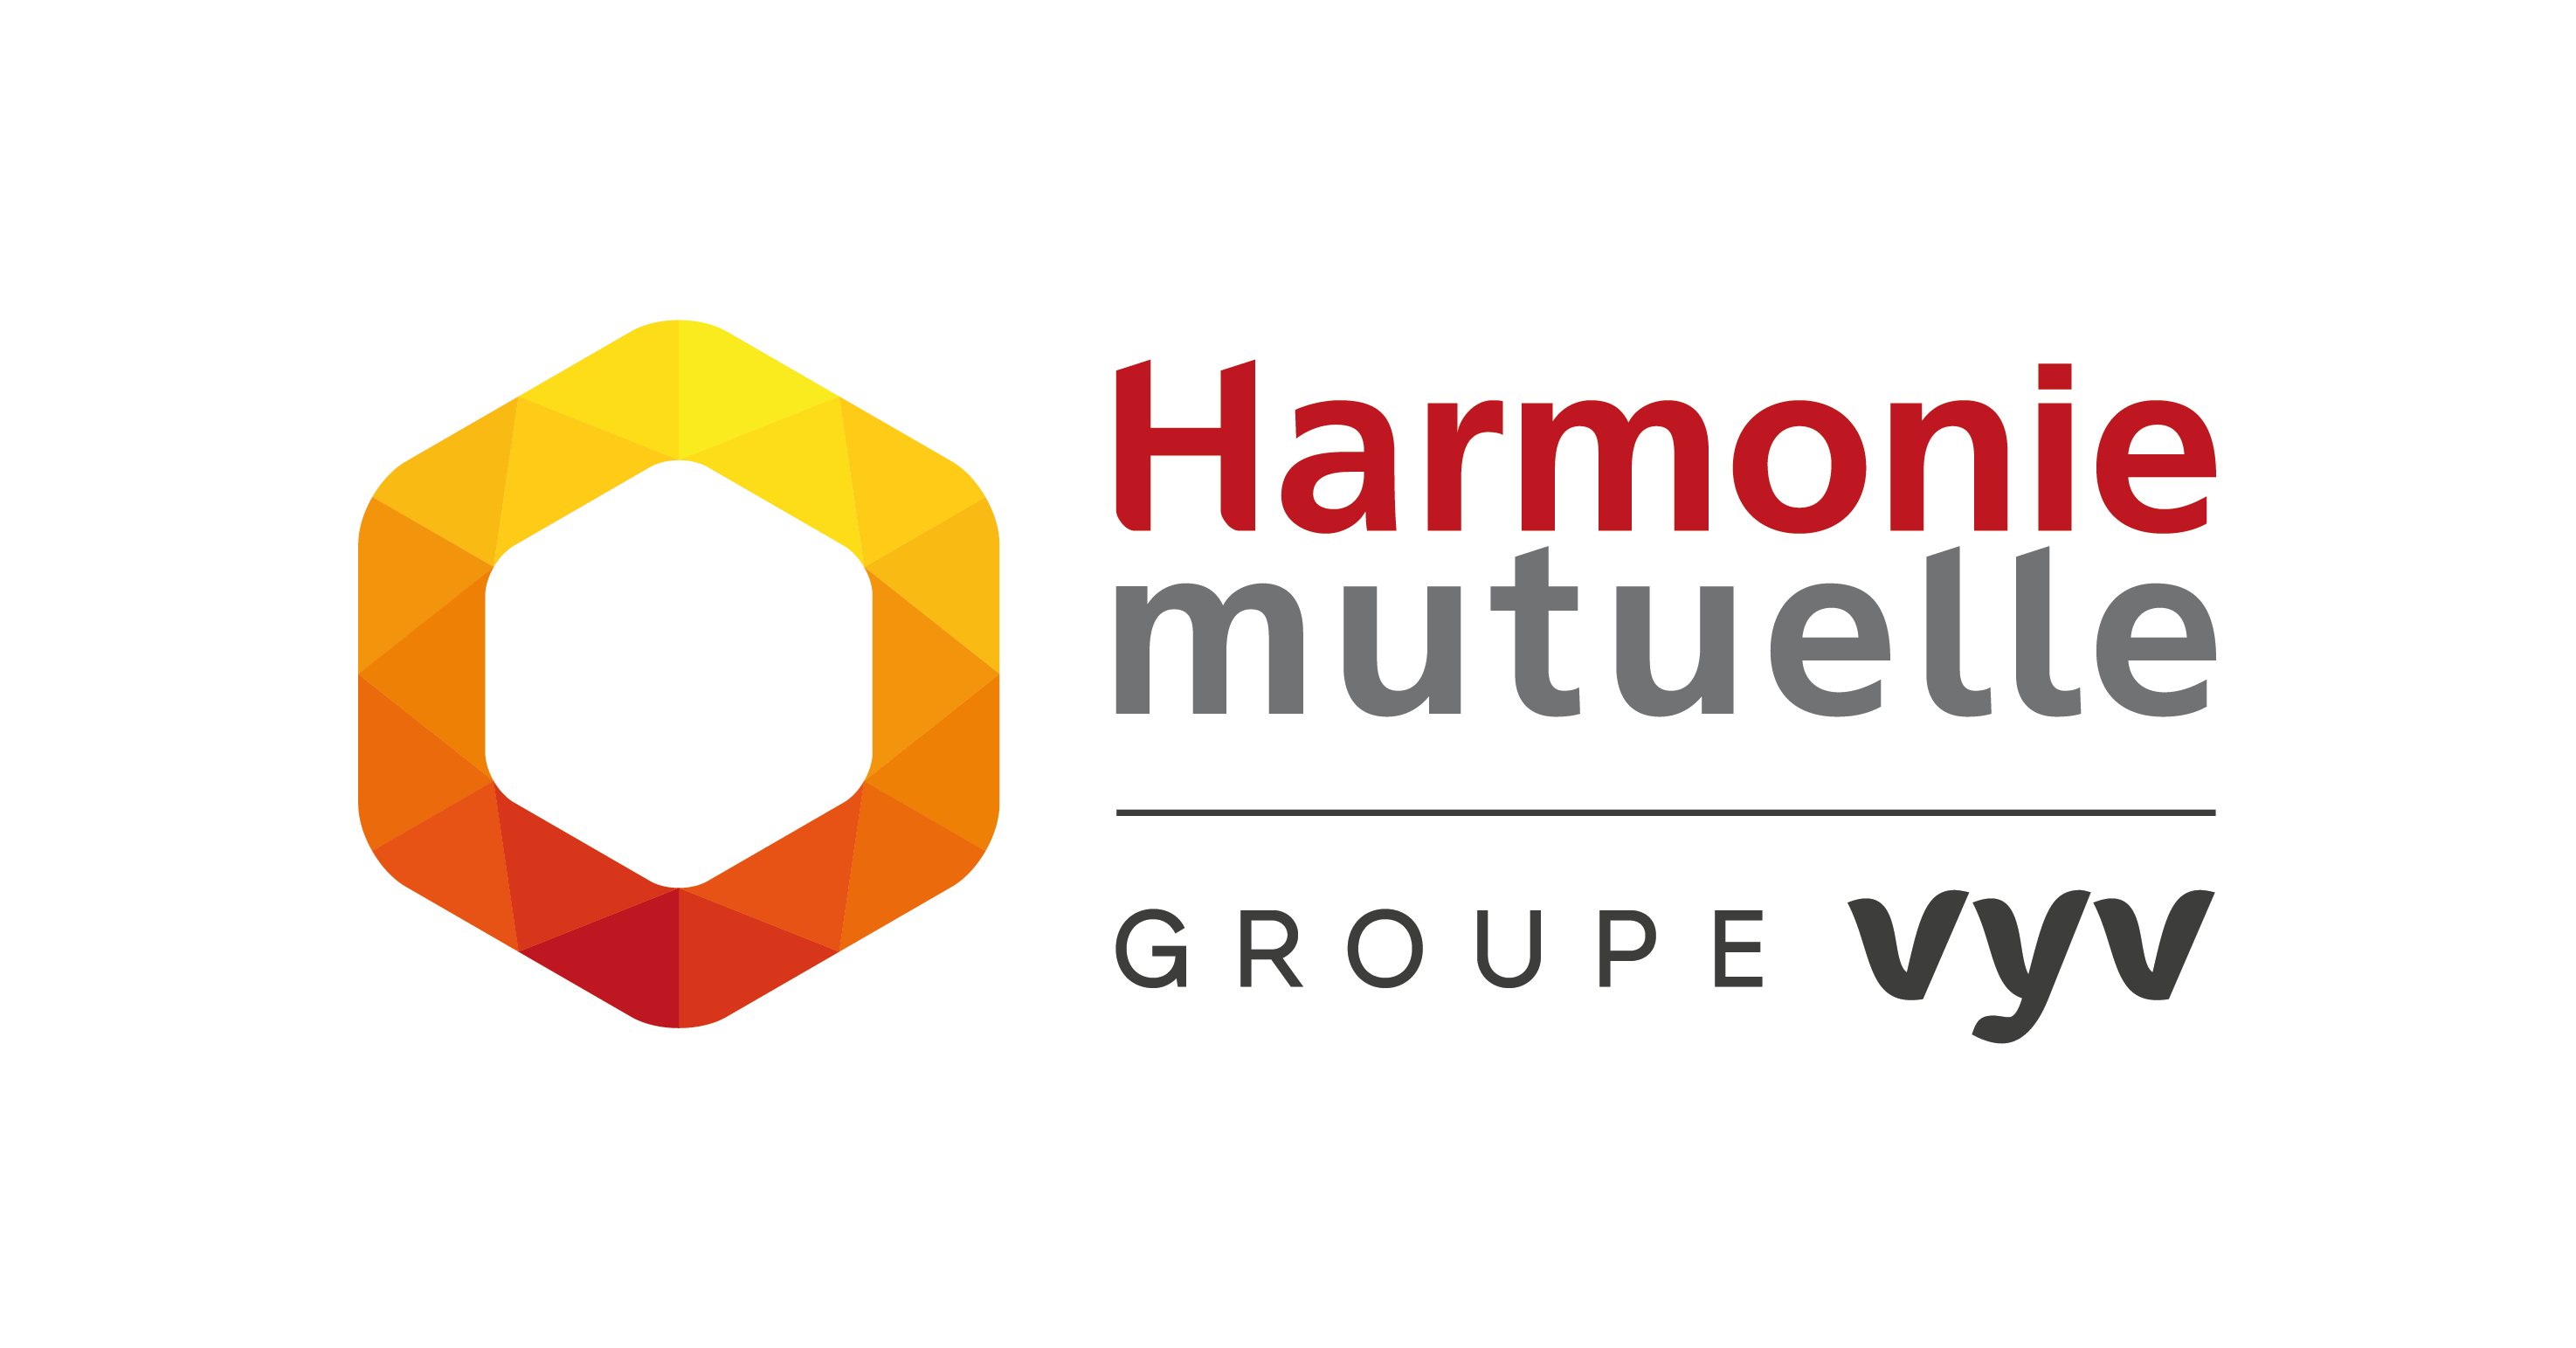 logo harmonie mutuelle